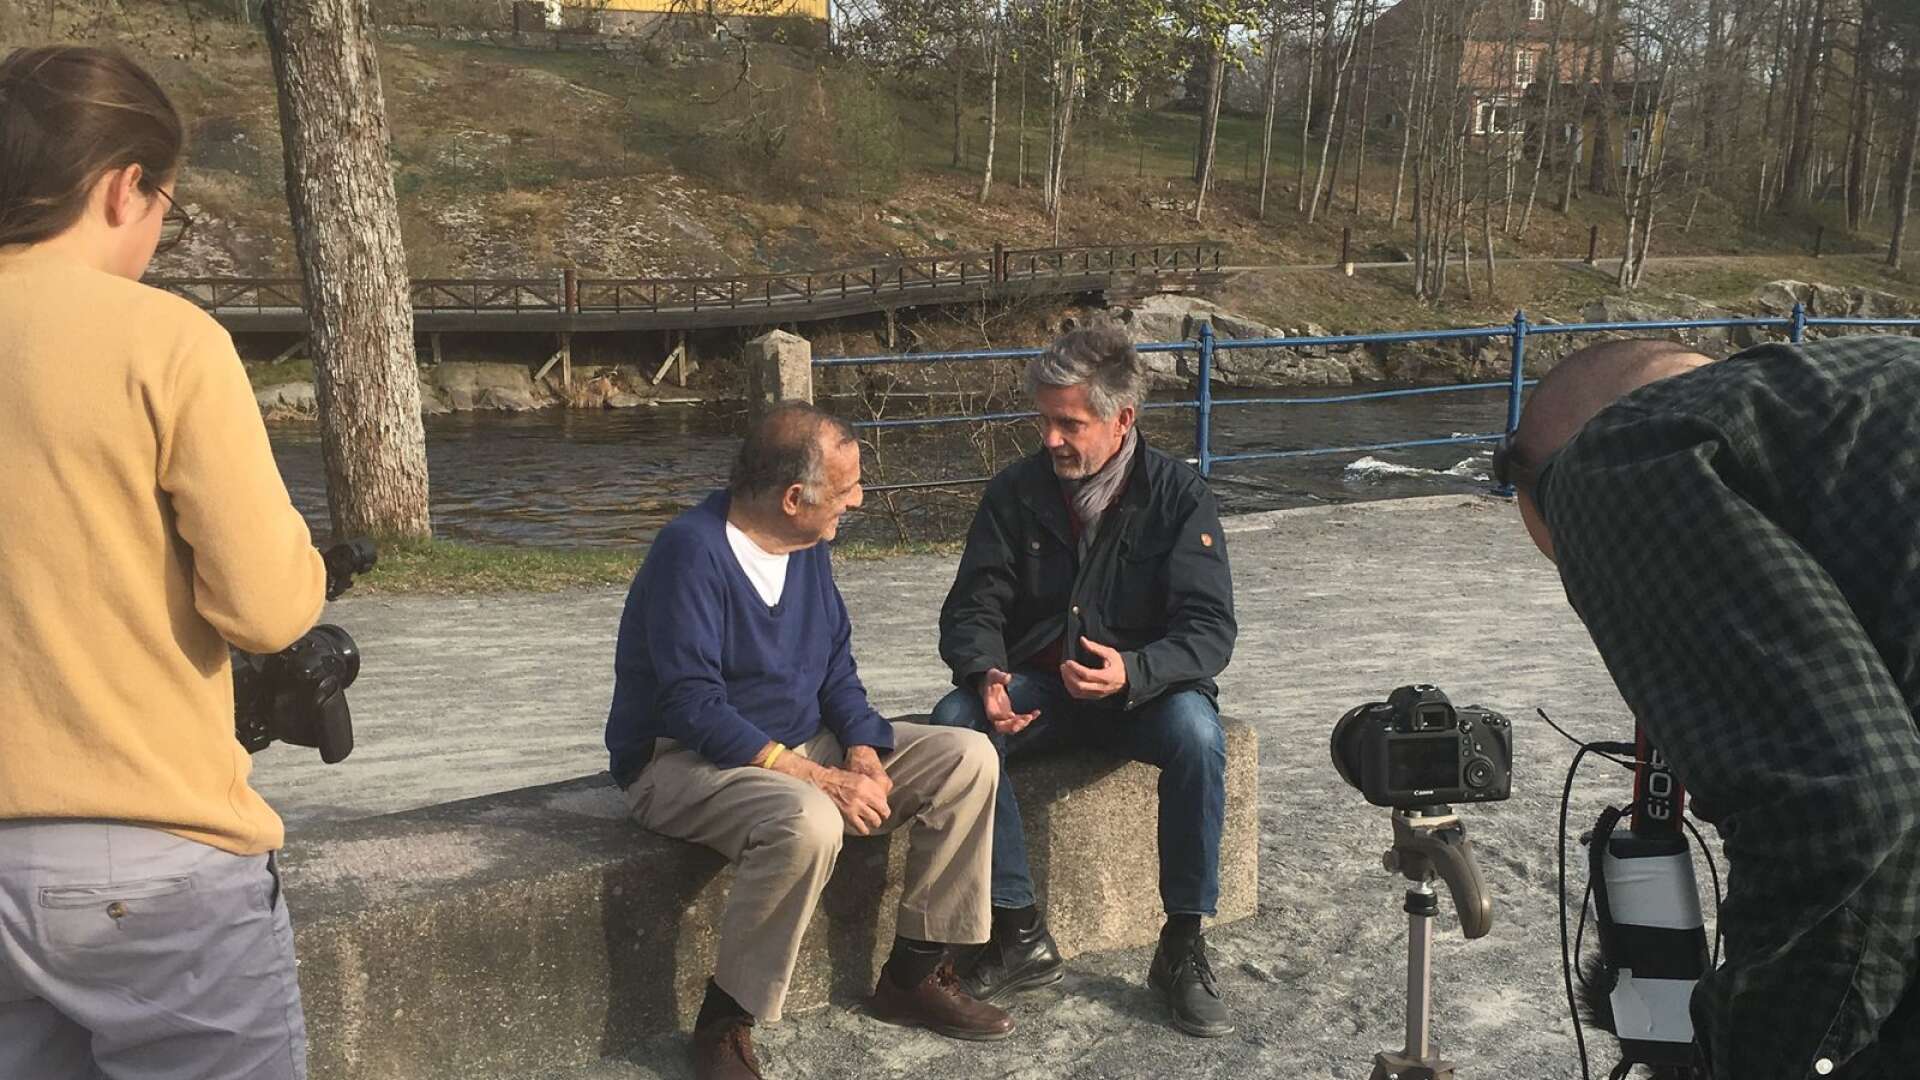 Åke Sandberg intervjuas av den franske journalisten Francois Missen som följde Säffle-Gunnars karriär och var en nära vän under Säffle-Gunnars svåra år.